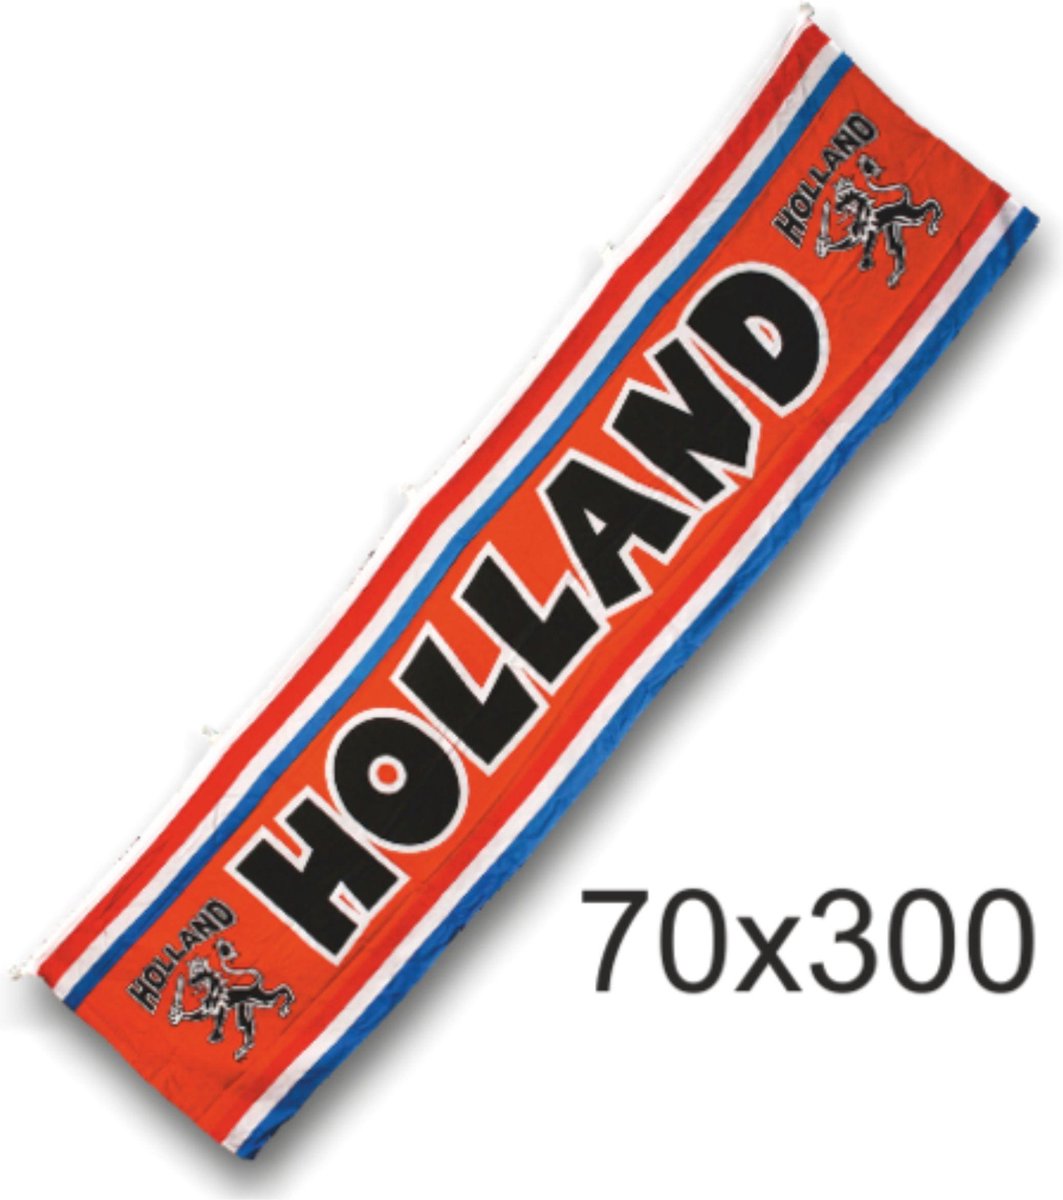 Grote straatvlag oranje Holland met leeuw | EK Voetbal 2020 2021 | Nederlands elftal vlag spandoek | Nederland supporter banner | Holland souvenir | 300 x 70 cm